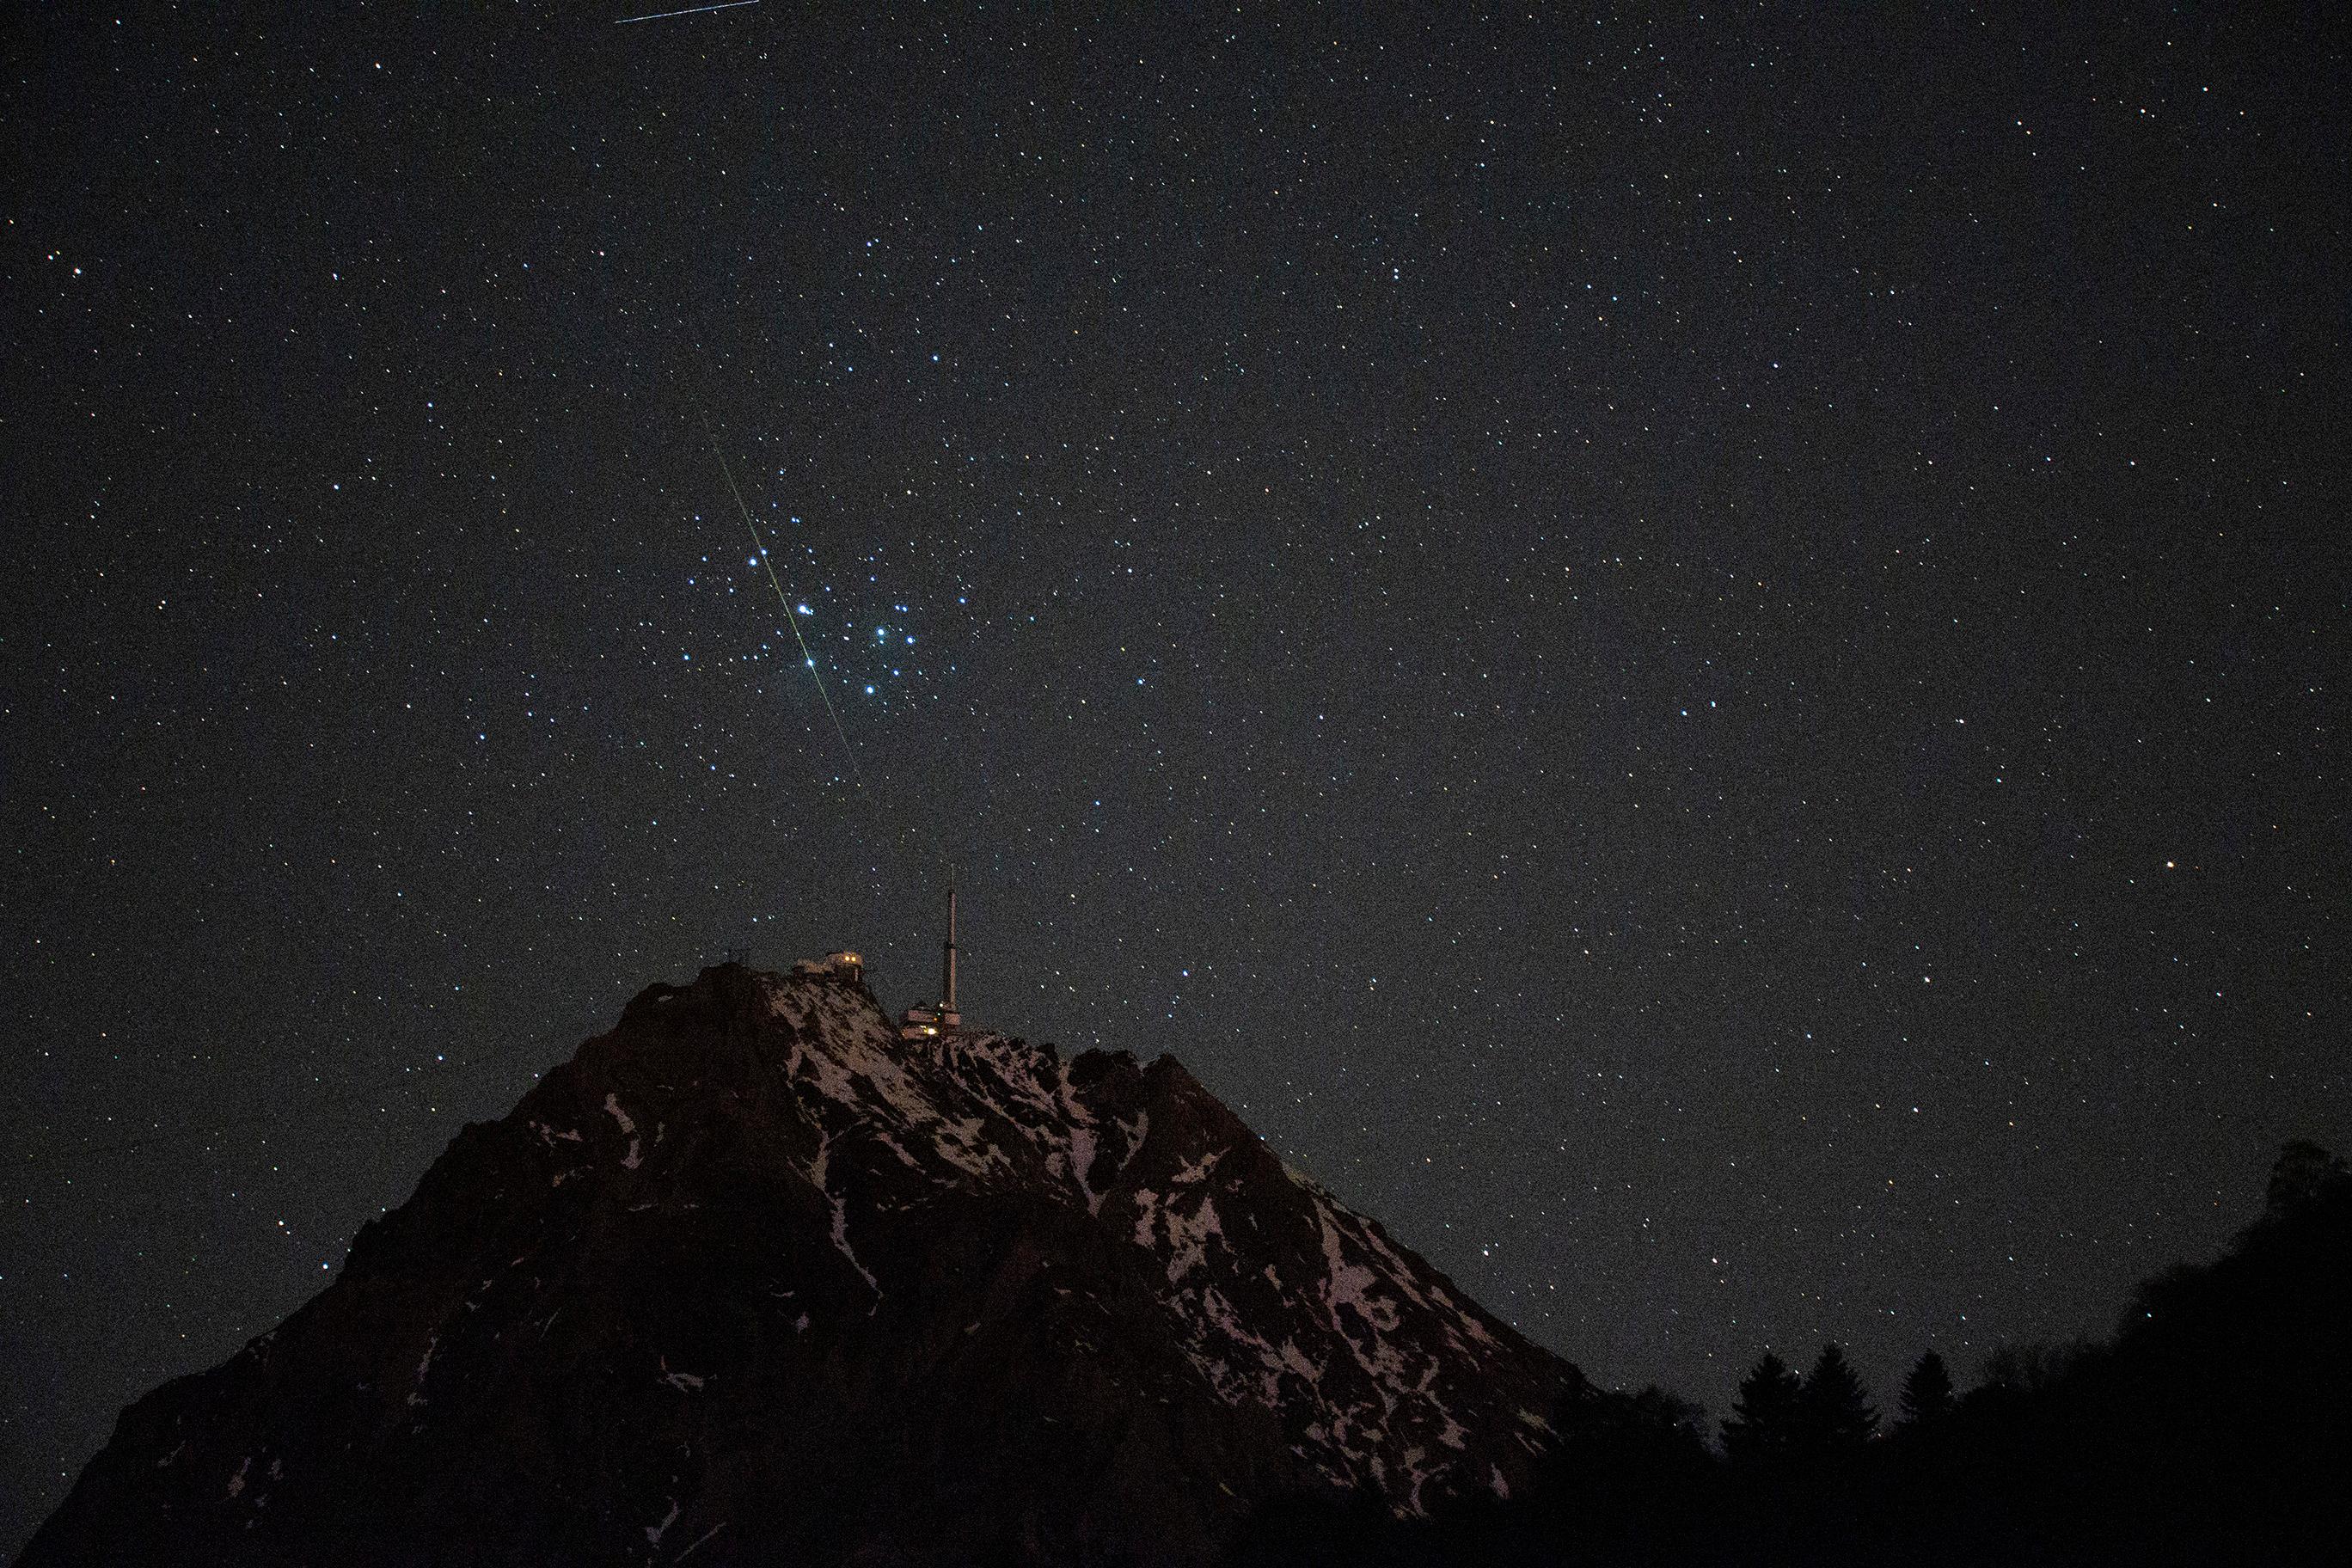 جبلٌ داكن مكسو بالثلوج وعلى قمّته بناءٌ يبدو كمنارة وفوقه شهابٌ يعبر أمام عنقود الثريّا على خلفيّة سماء ليل تتناثر فيها النجوم